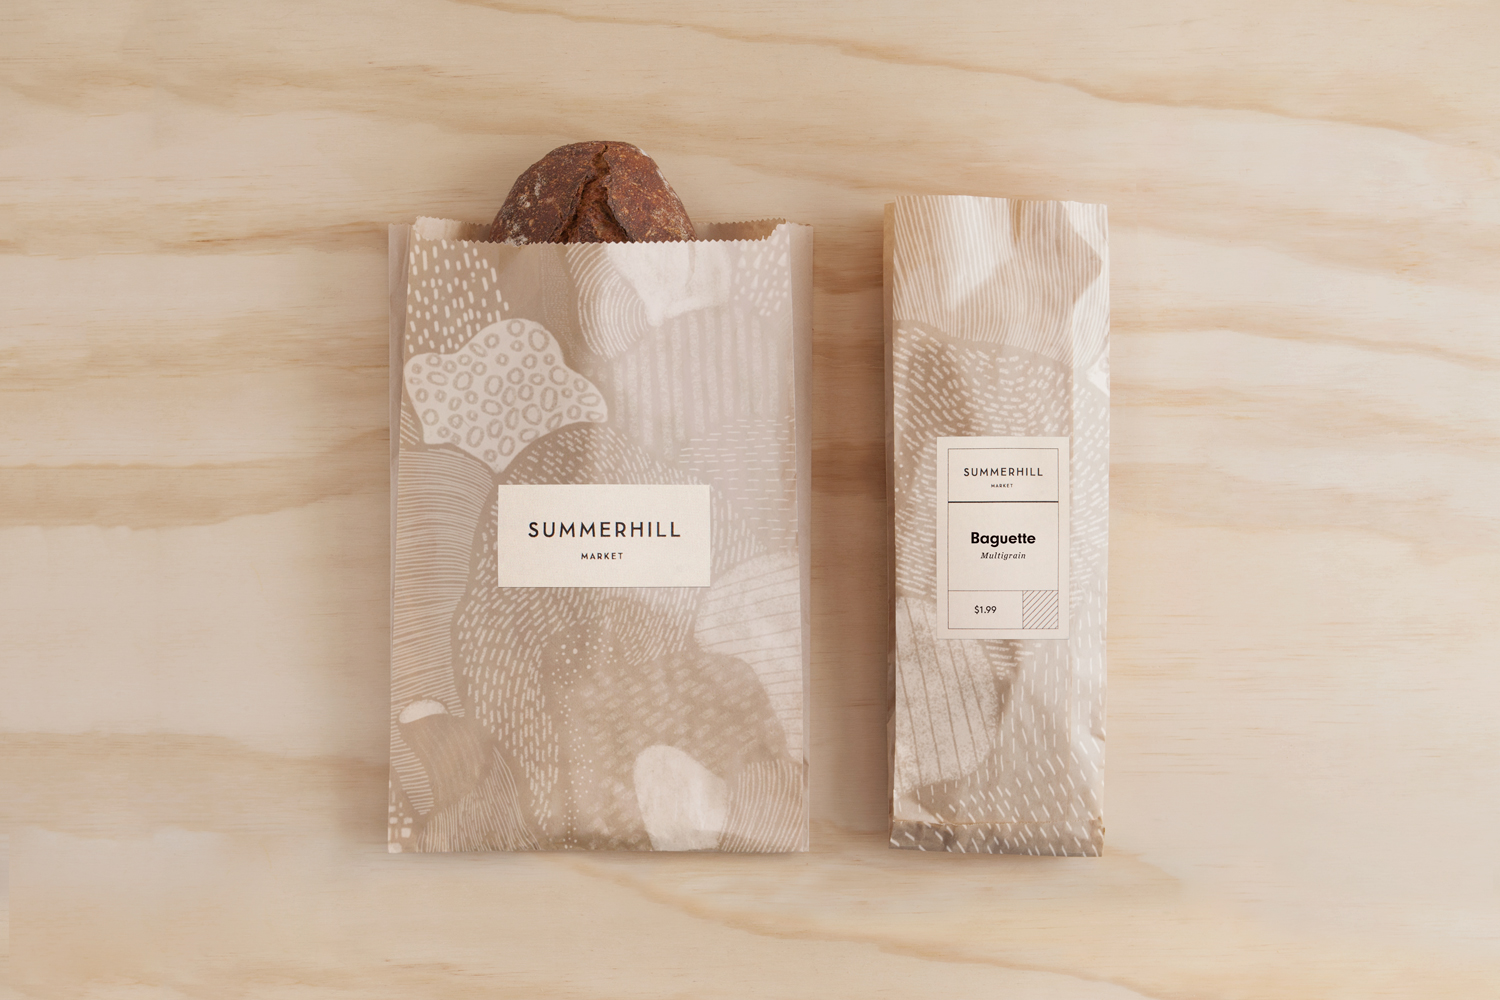 烘焙面包包装袋设计西安四喜品牌包装设计